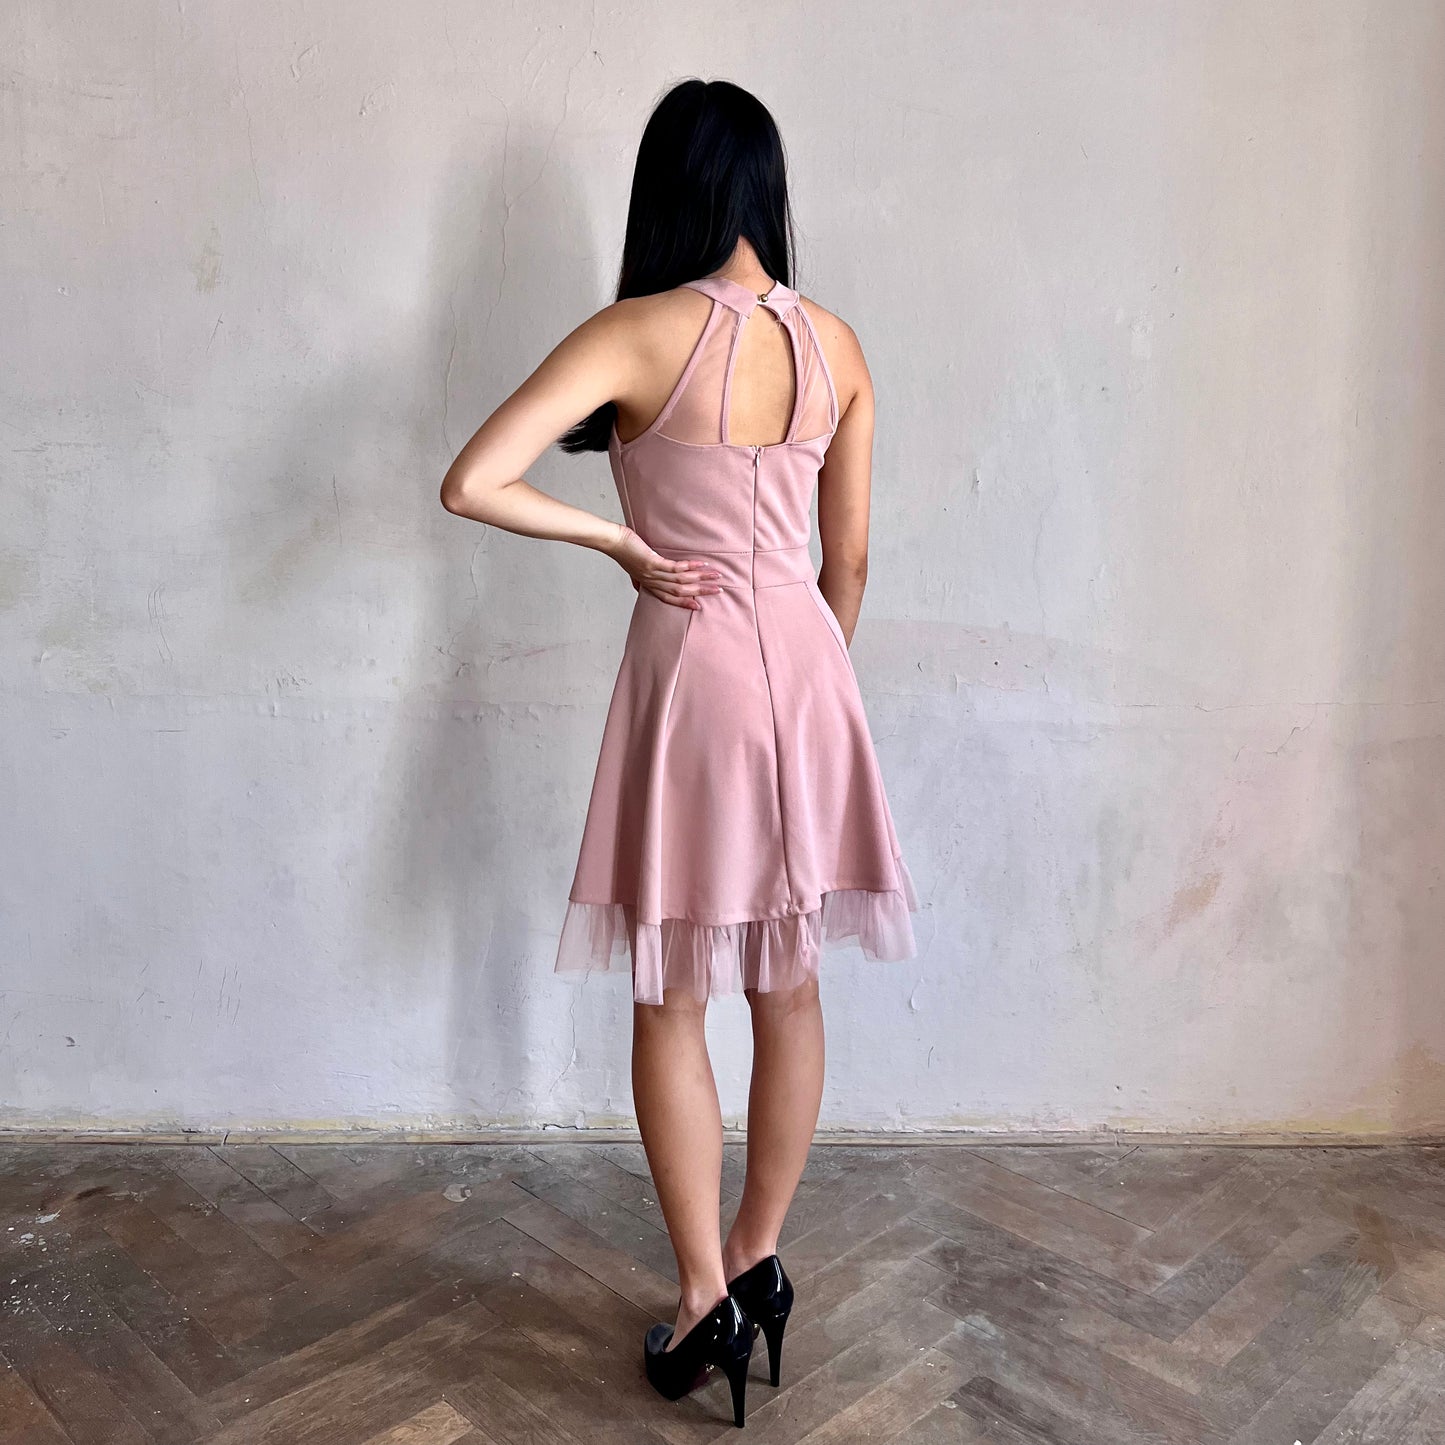 Modelka asijského původu pózující z boku oblečená v růžových krátkých společenských šatech